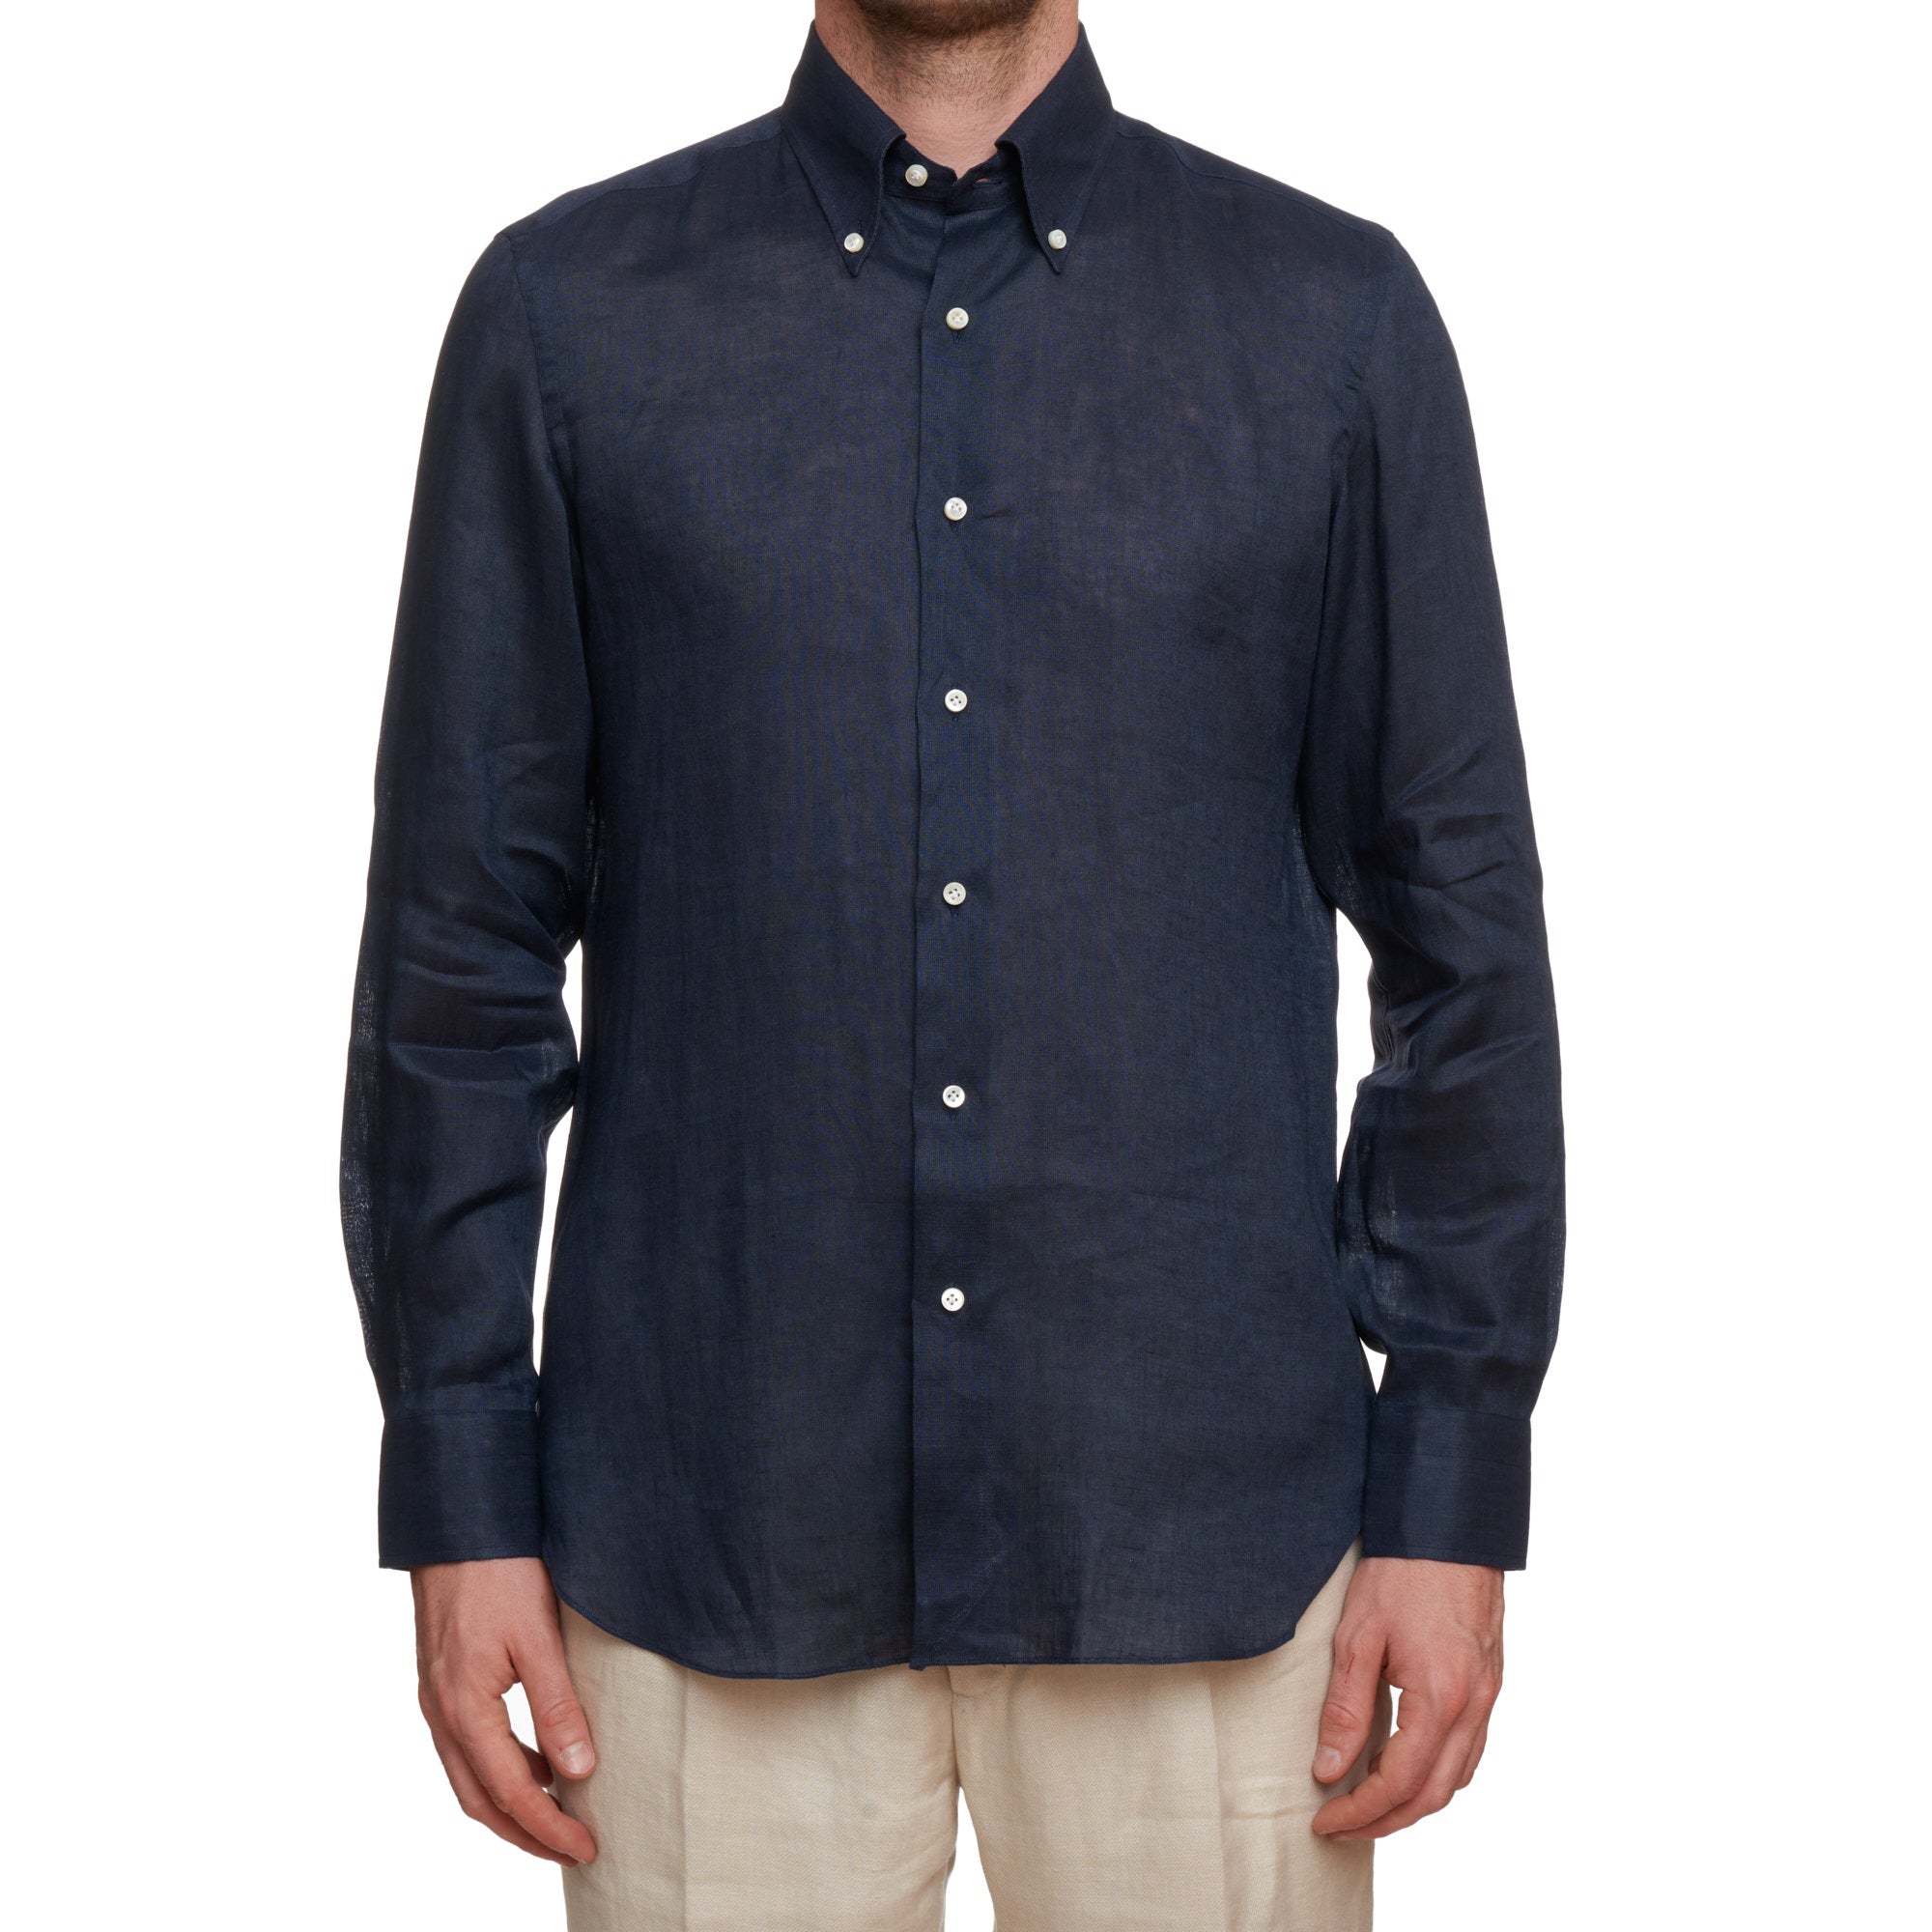 SARTORIO Napoli by KITON Indigo Blue Linen Button-Down Casual Shirt EU 40 NEW US 15.75